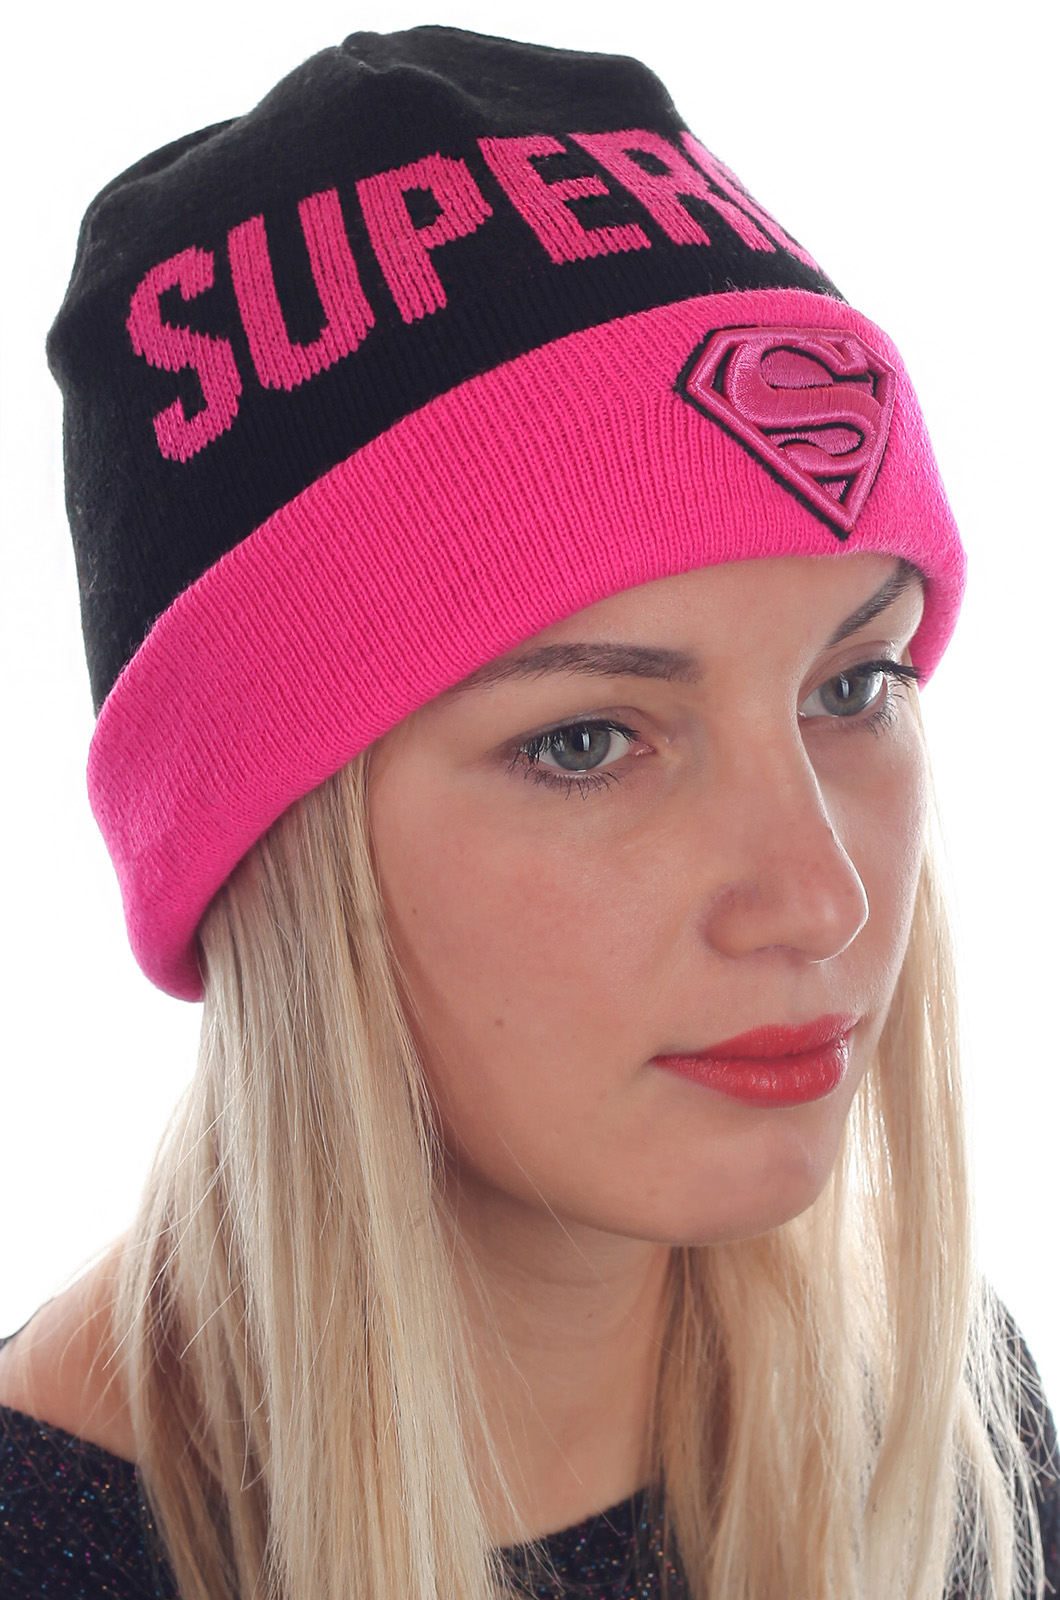 Заказать онлайн женские шапки SuperGirl